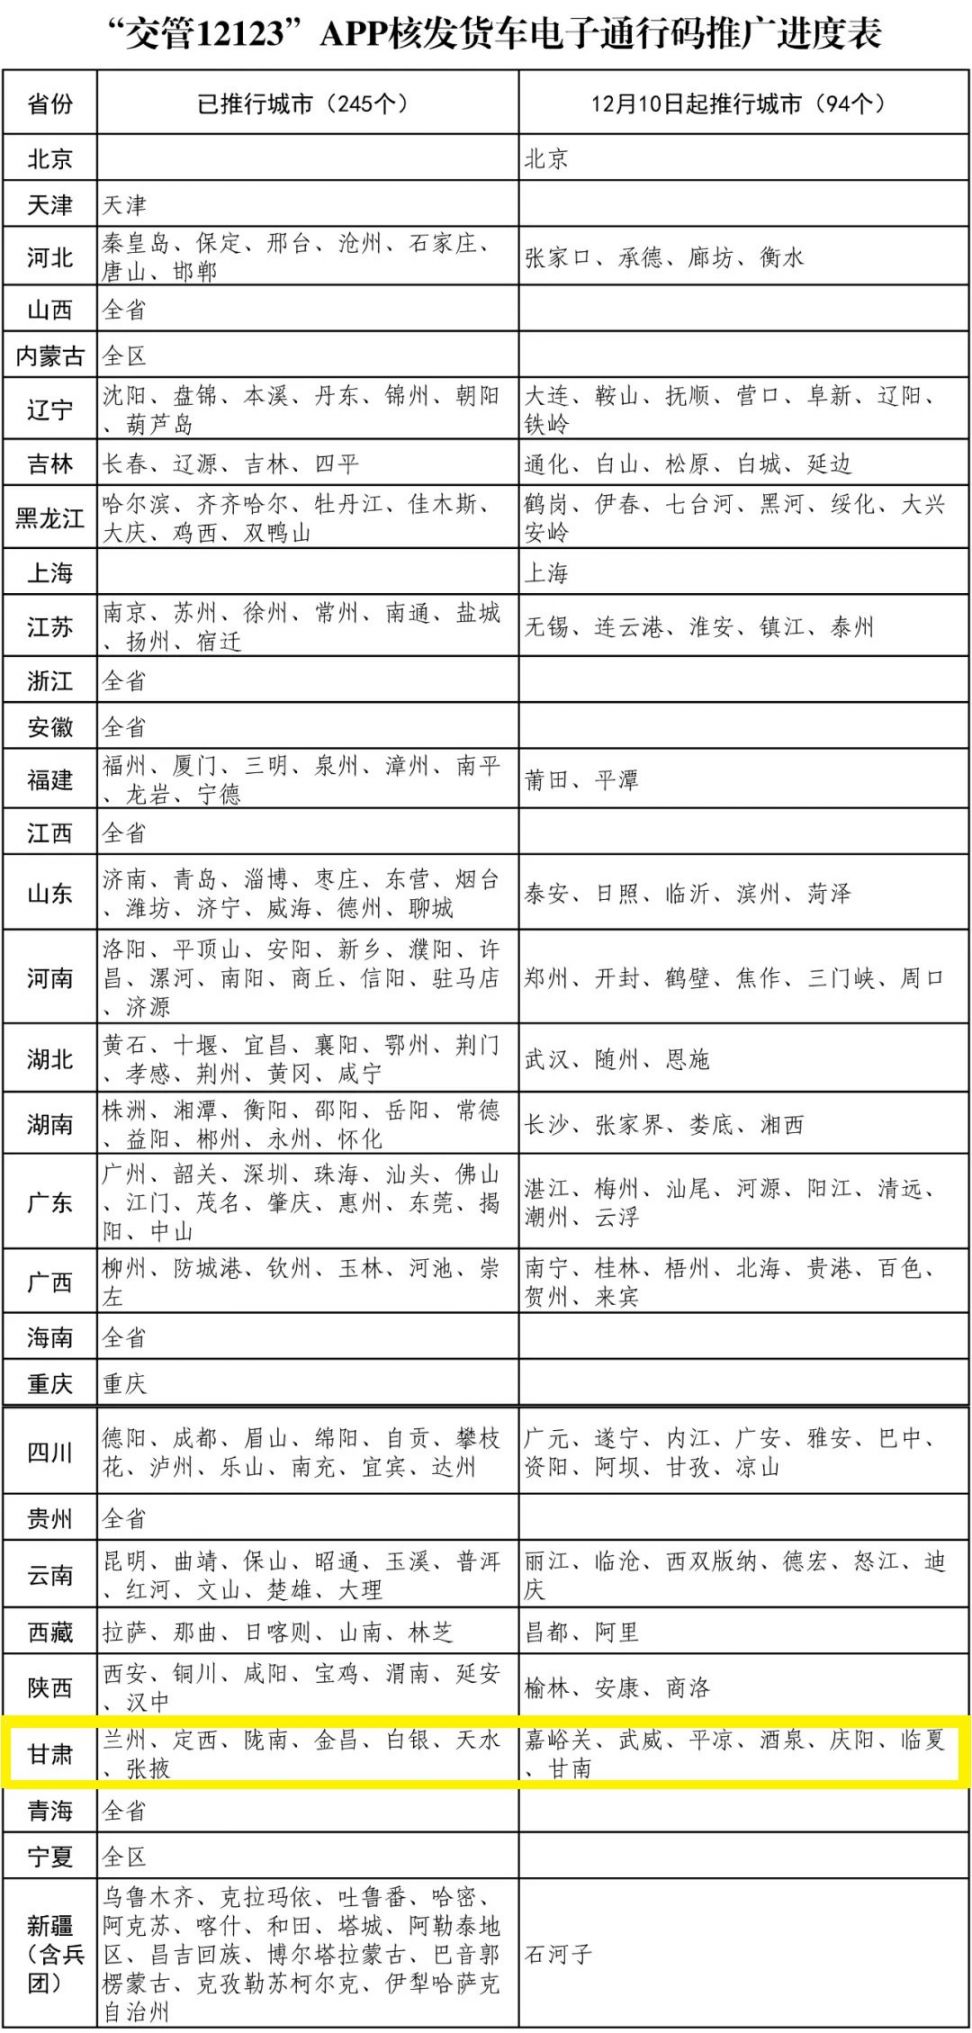 甘肃货车电子通行码推广城市名单